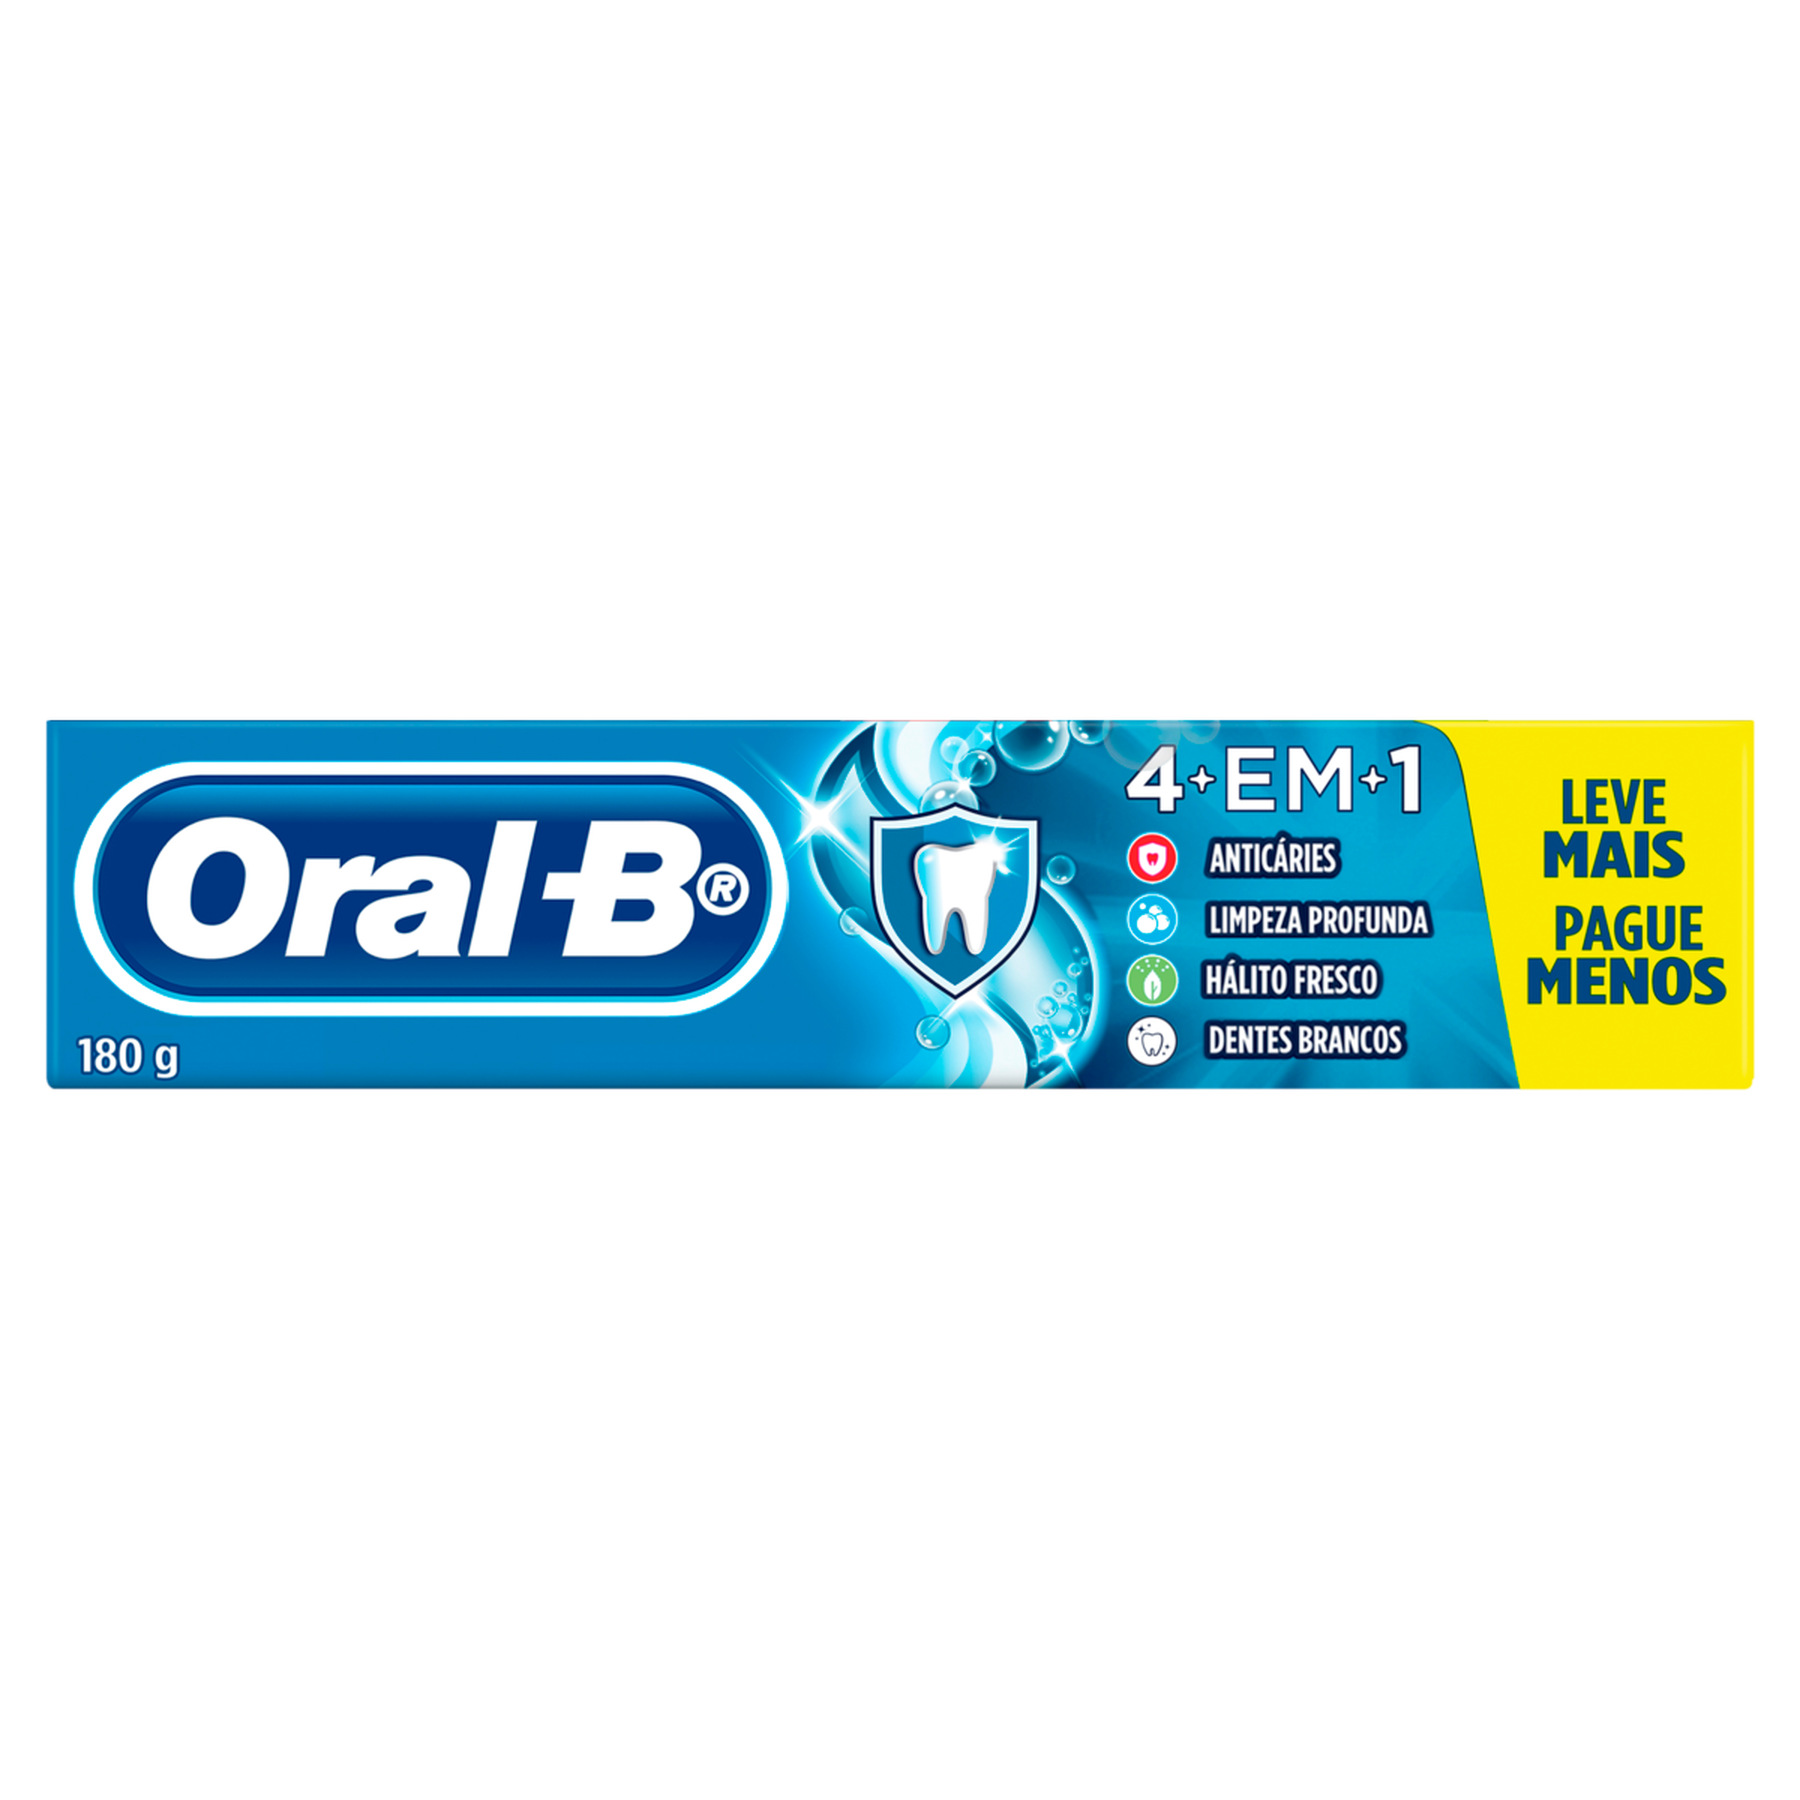 Creme Dental 4 em 1 Oral-B Caixa 180g - Embalagem Leve Mais Pague Menos